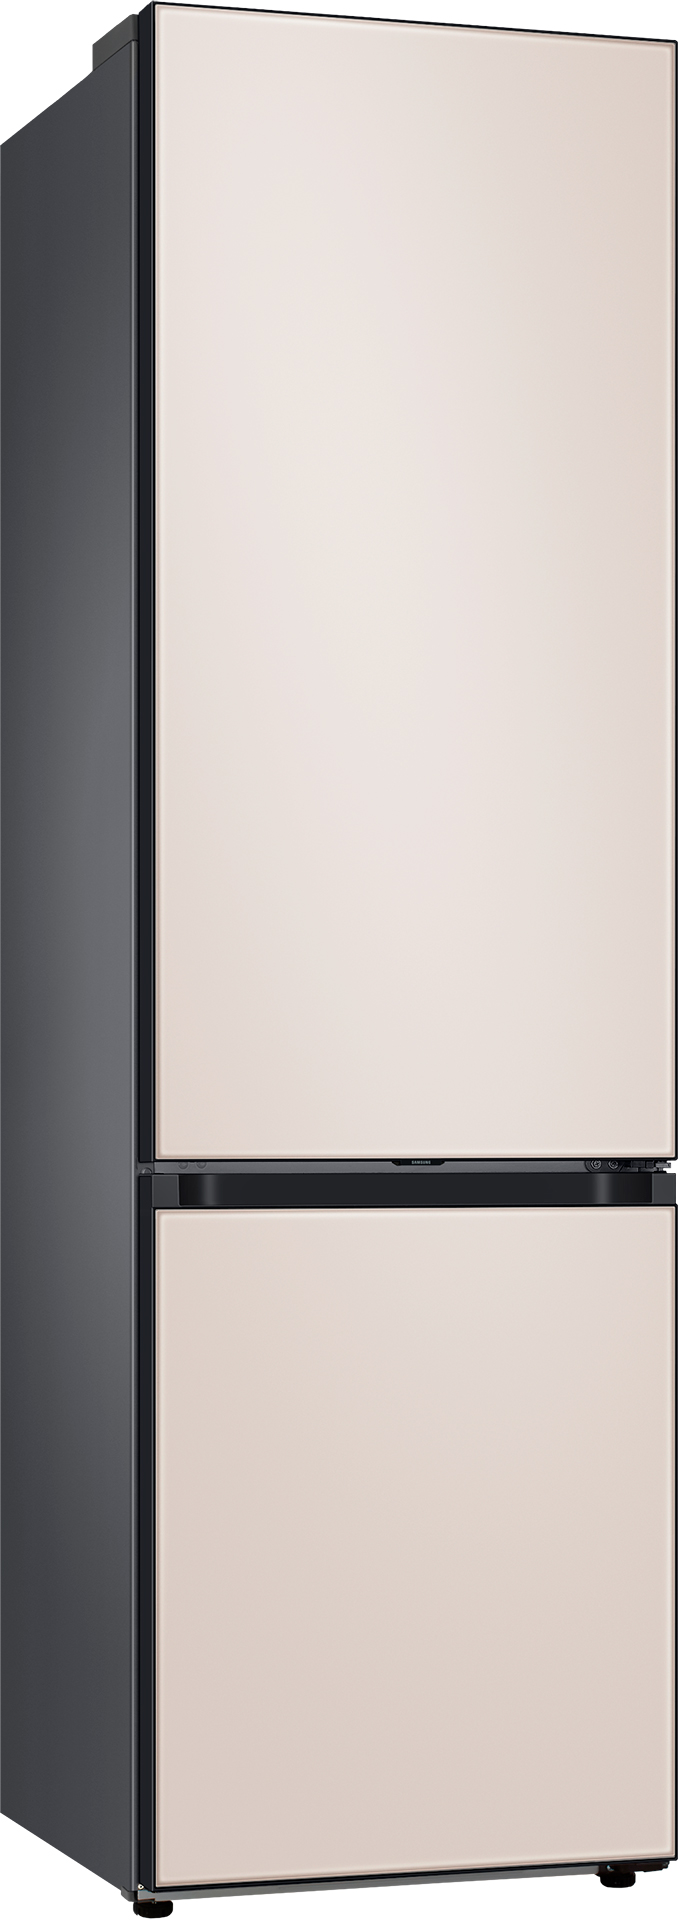 Холодильник Samsung RB38A6B6239/UA отзывы - изображения 5